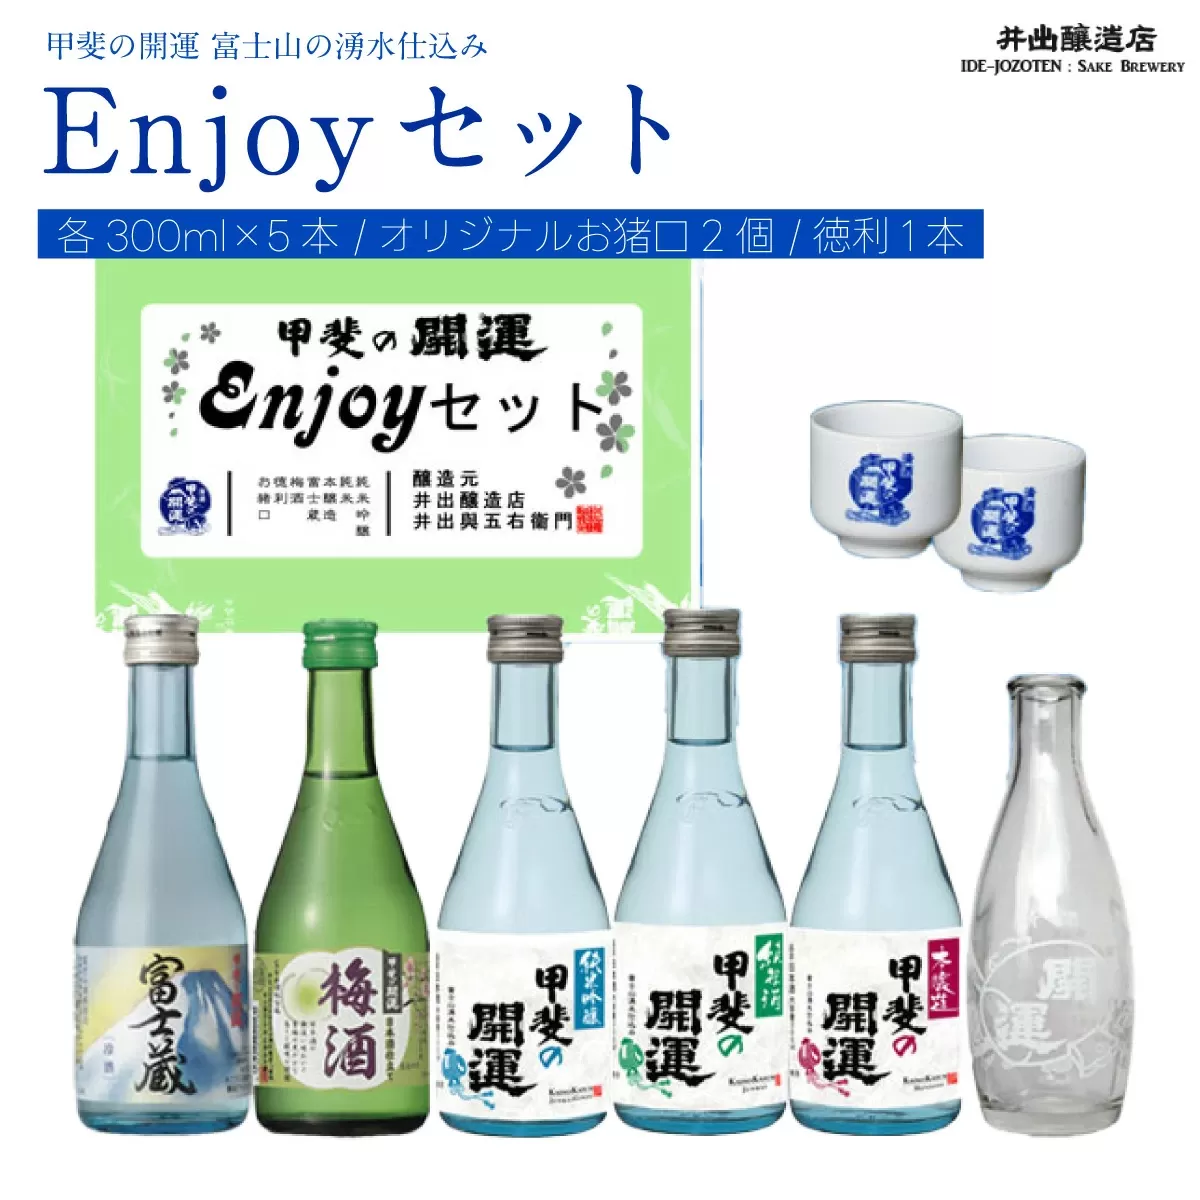 ＜富士山の日本酒＞甲斐の開運 Enjoy セット（各300ml×5本・オリジナルお猪口2個と徳利1本） FAK010